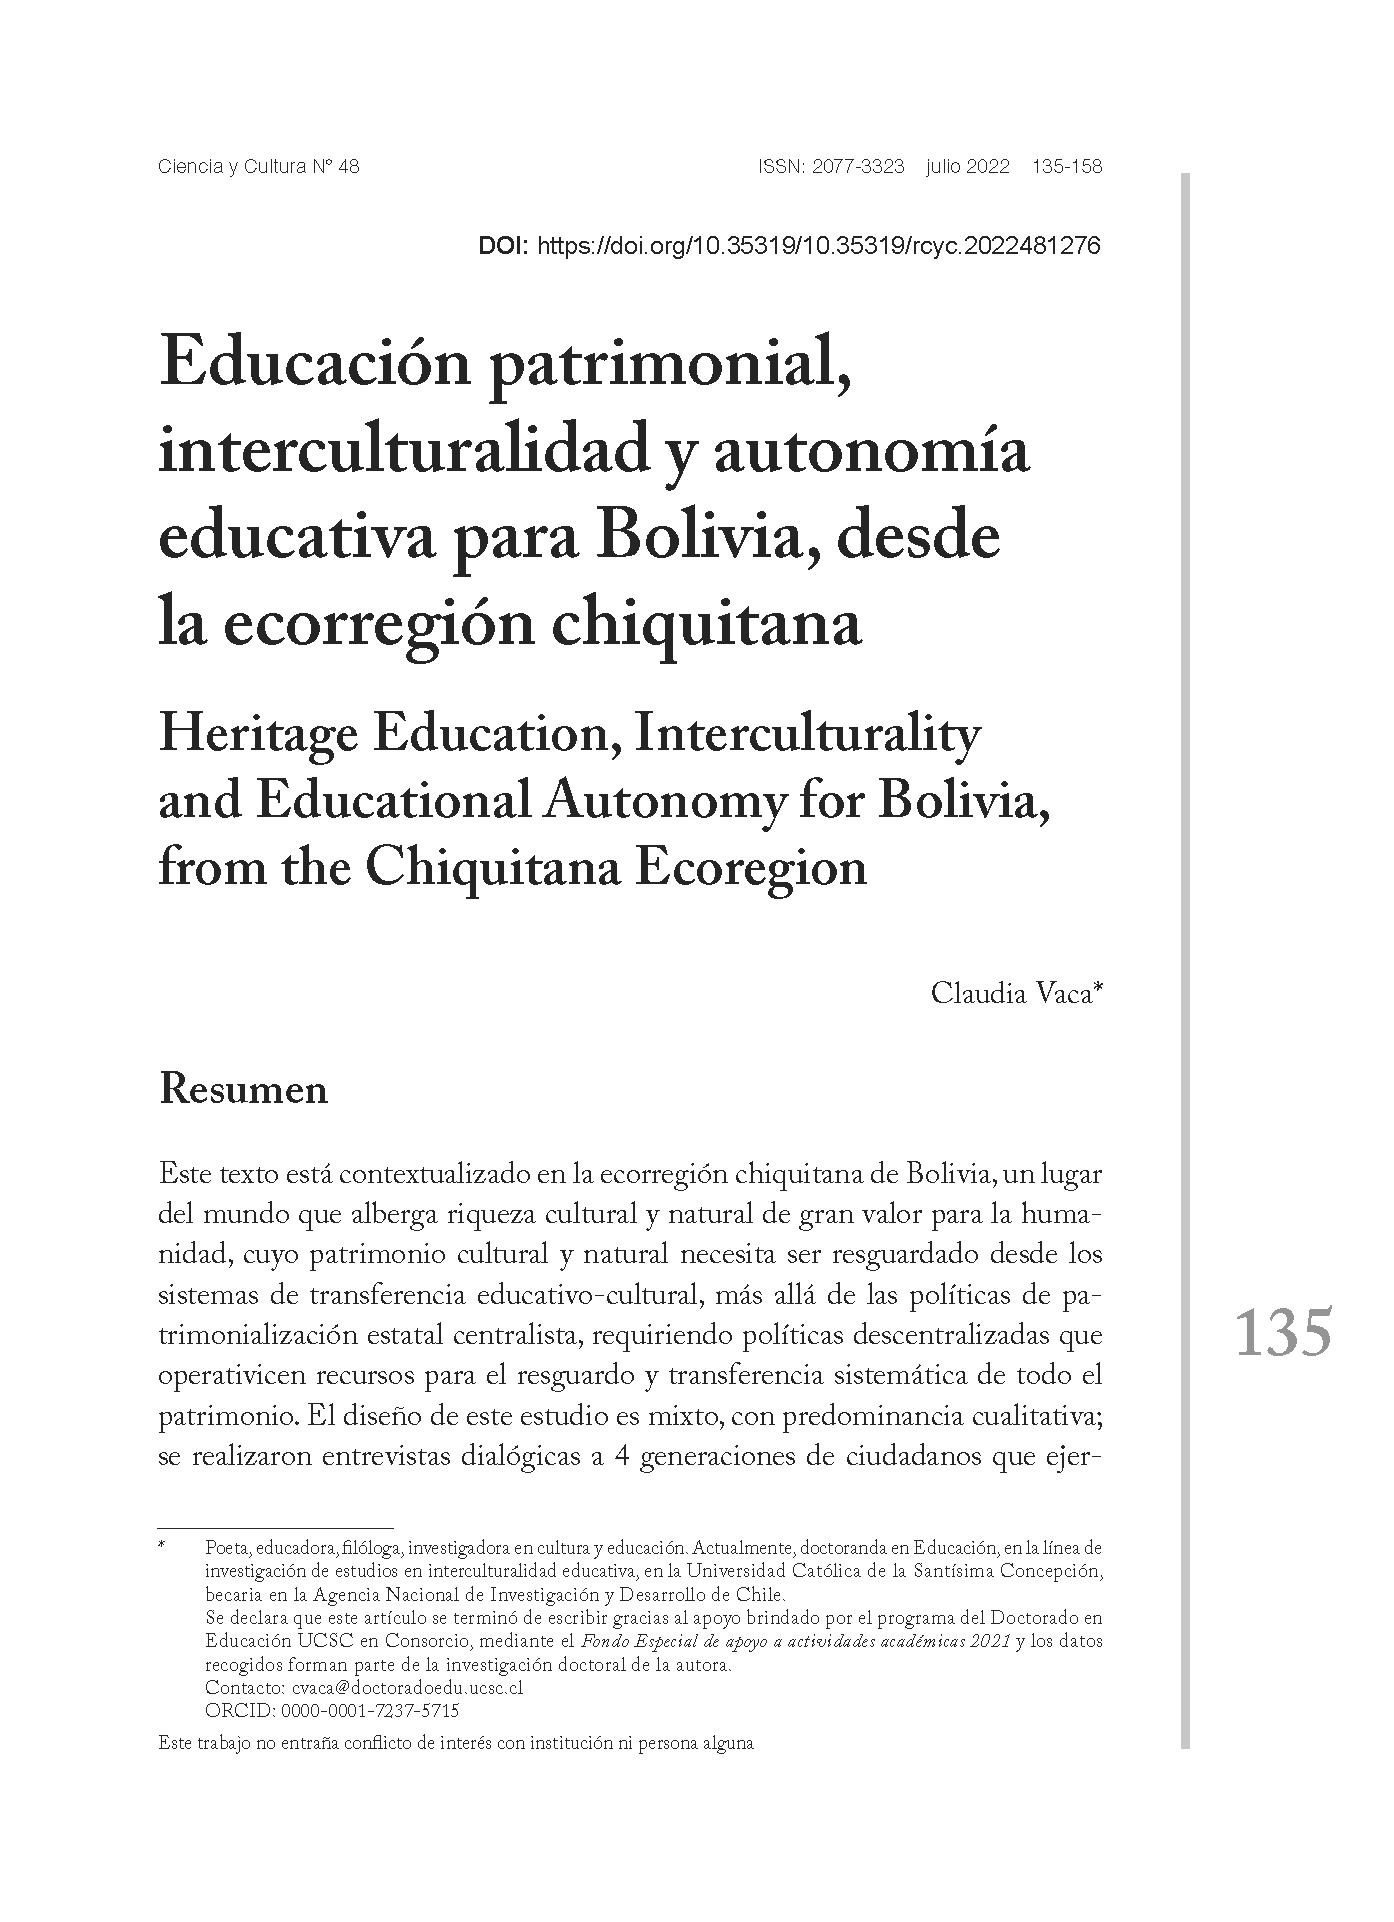 Educación patrimonial, interculturalidad y autonomía educativa para Bolivia, desde la ecorregión chiquitana